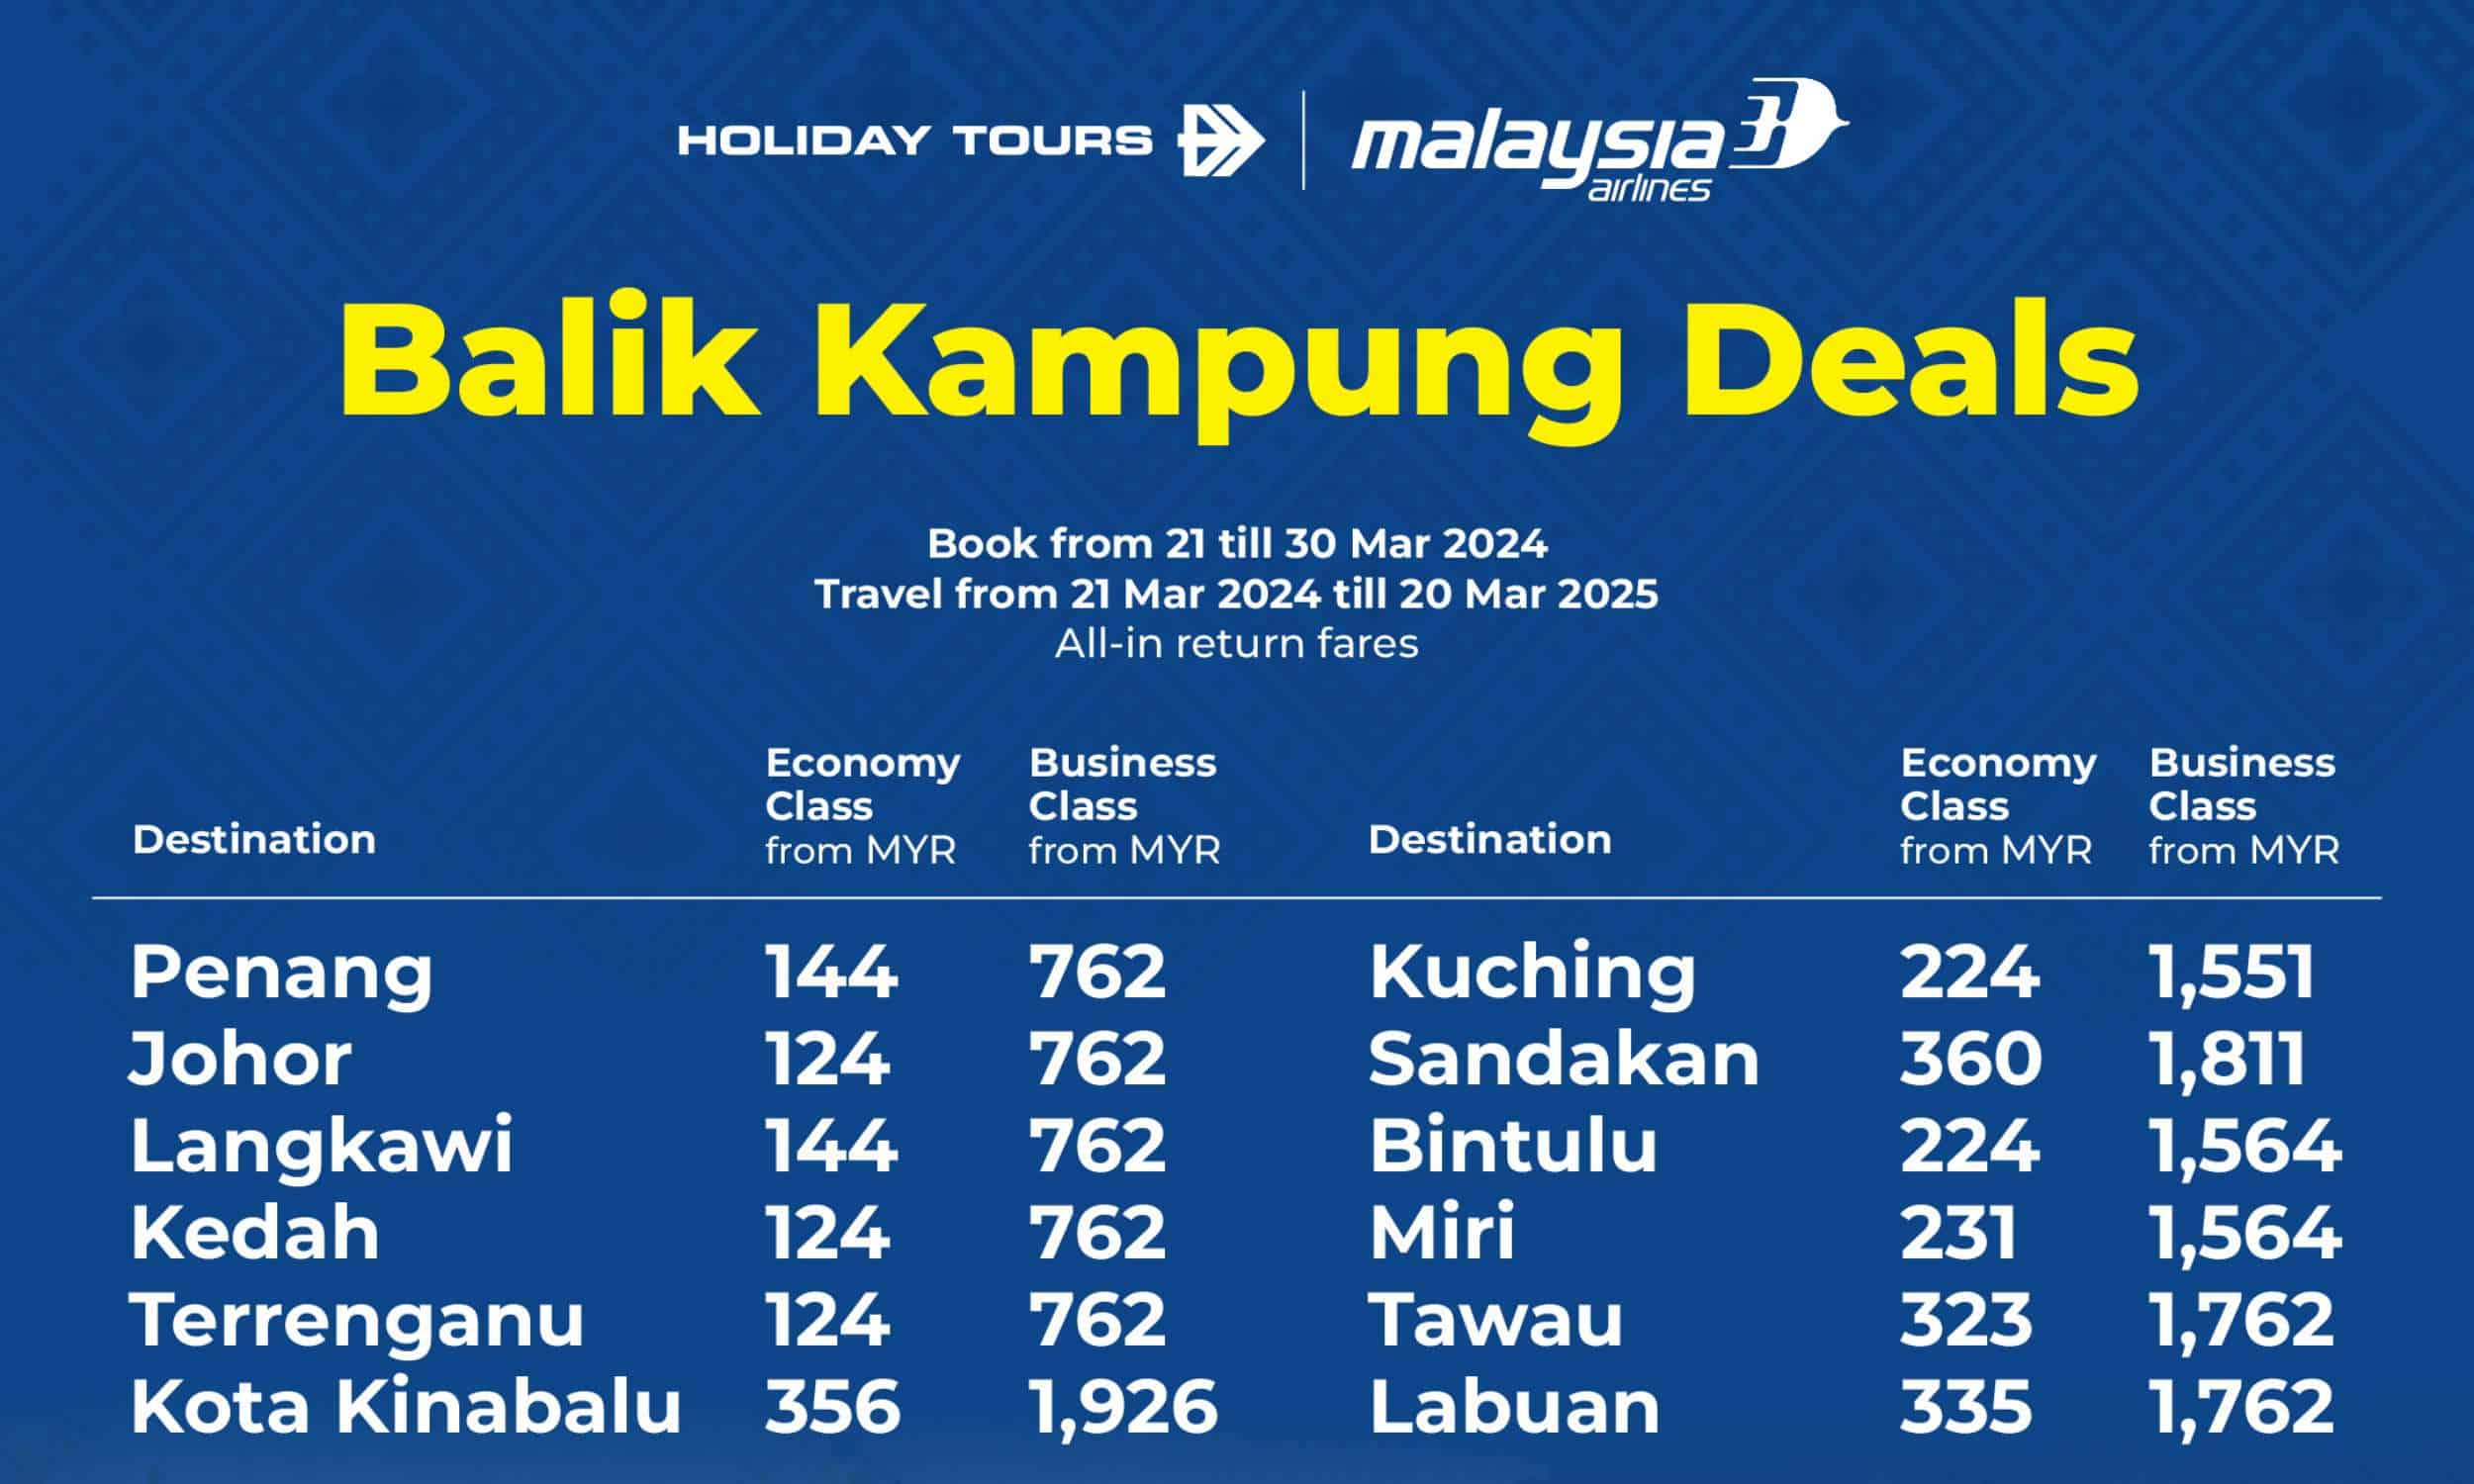 Malaysia Airlines Balik Kampung Deals